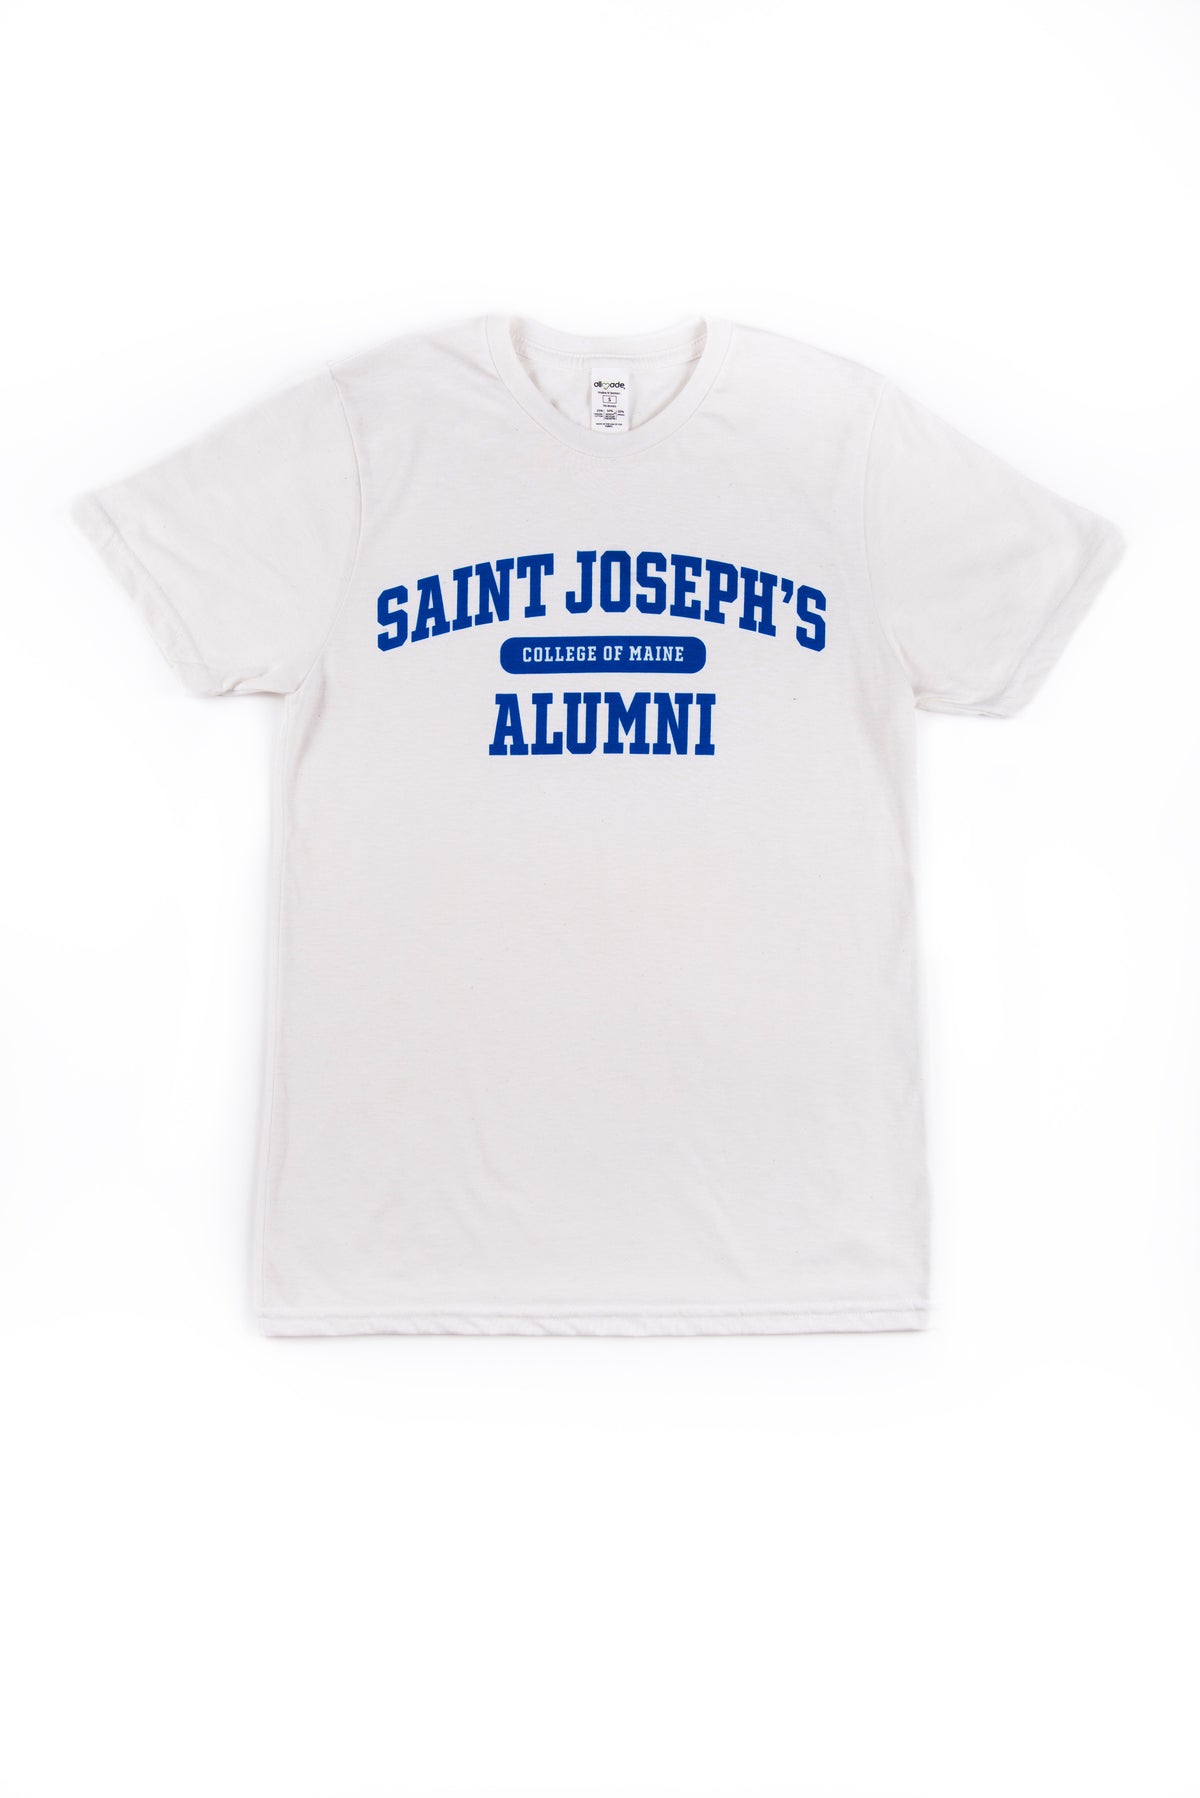 White SJC Alumni T-shirt